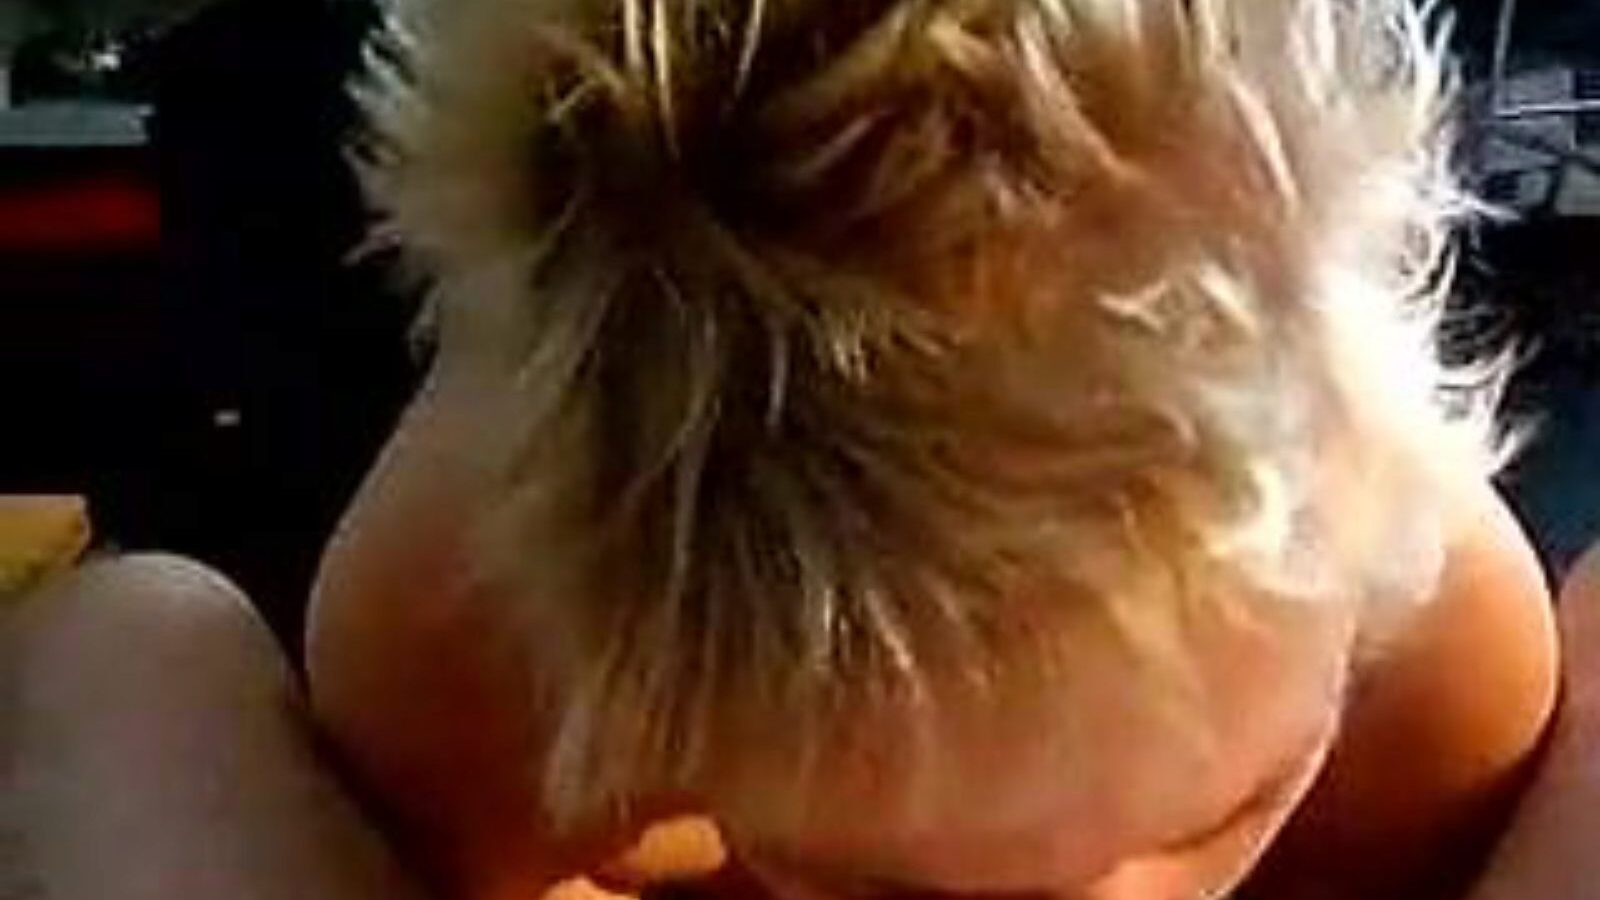 leuke dame: homemade & old girl porn video a6 - xhamster bekijk gratis leuke dame tube fuckfest film op xhamster, met de heetste verzameling nederlandse zelfgemaakte, oude meid & zuigende pornografische video-optredens